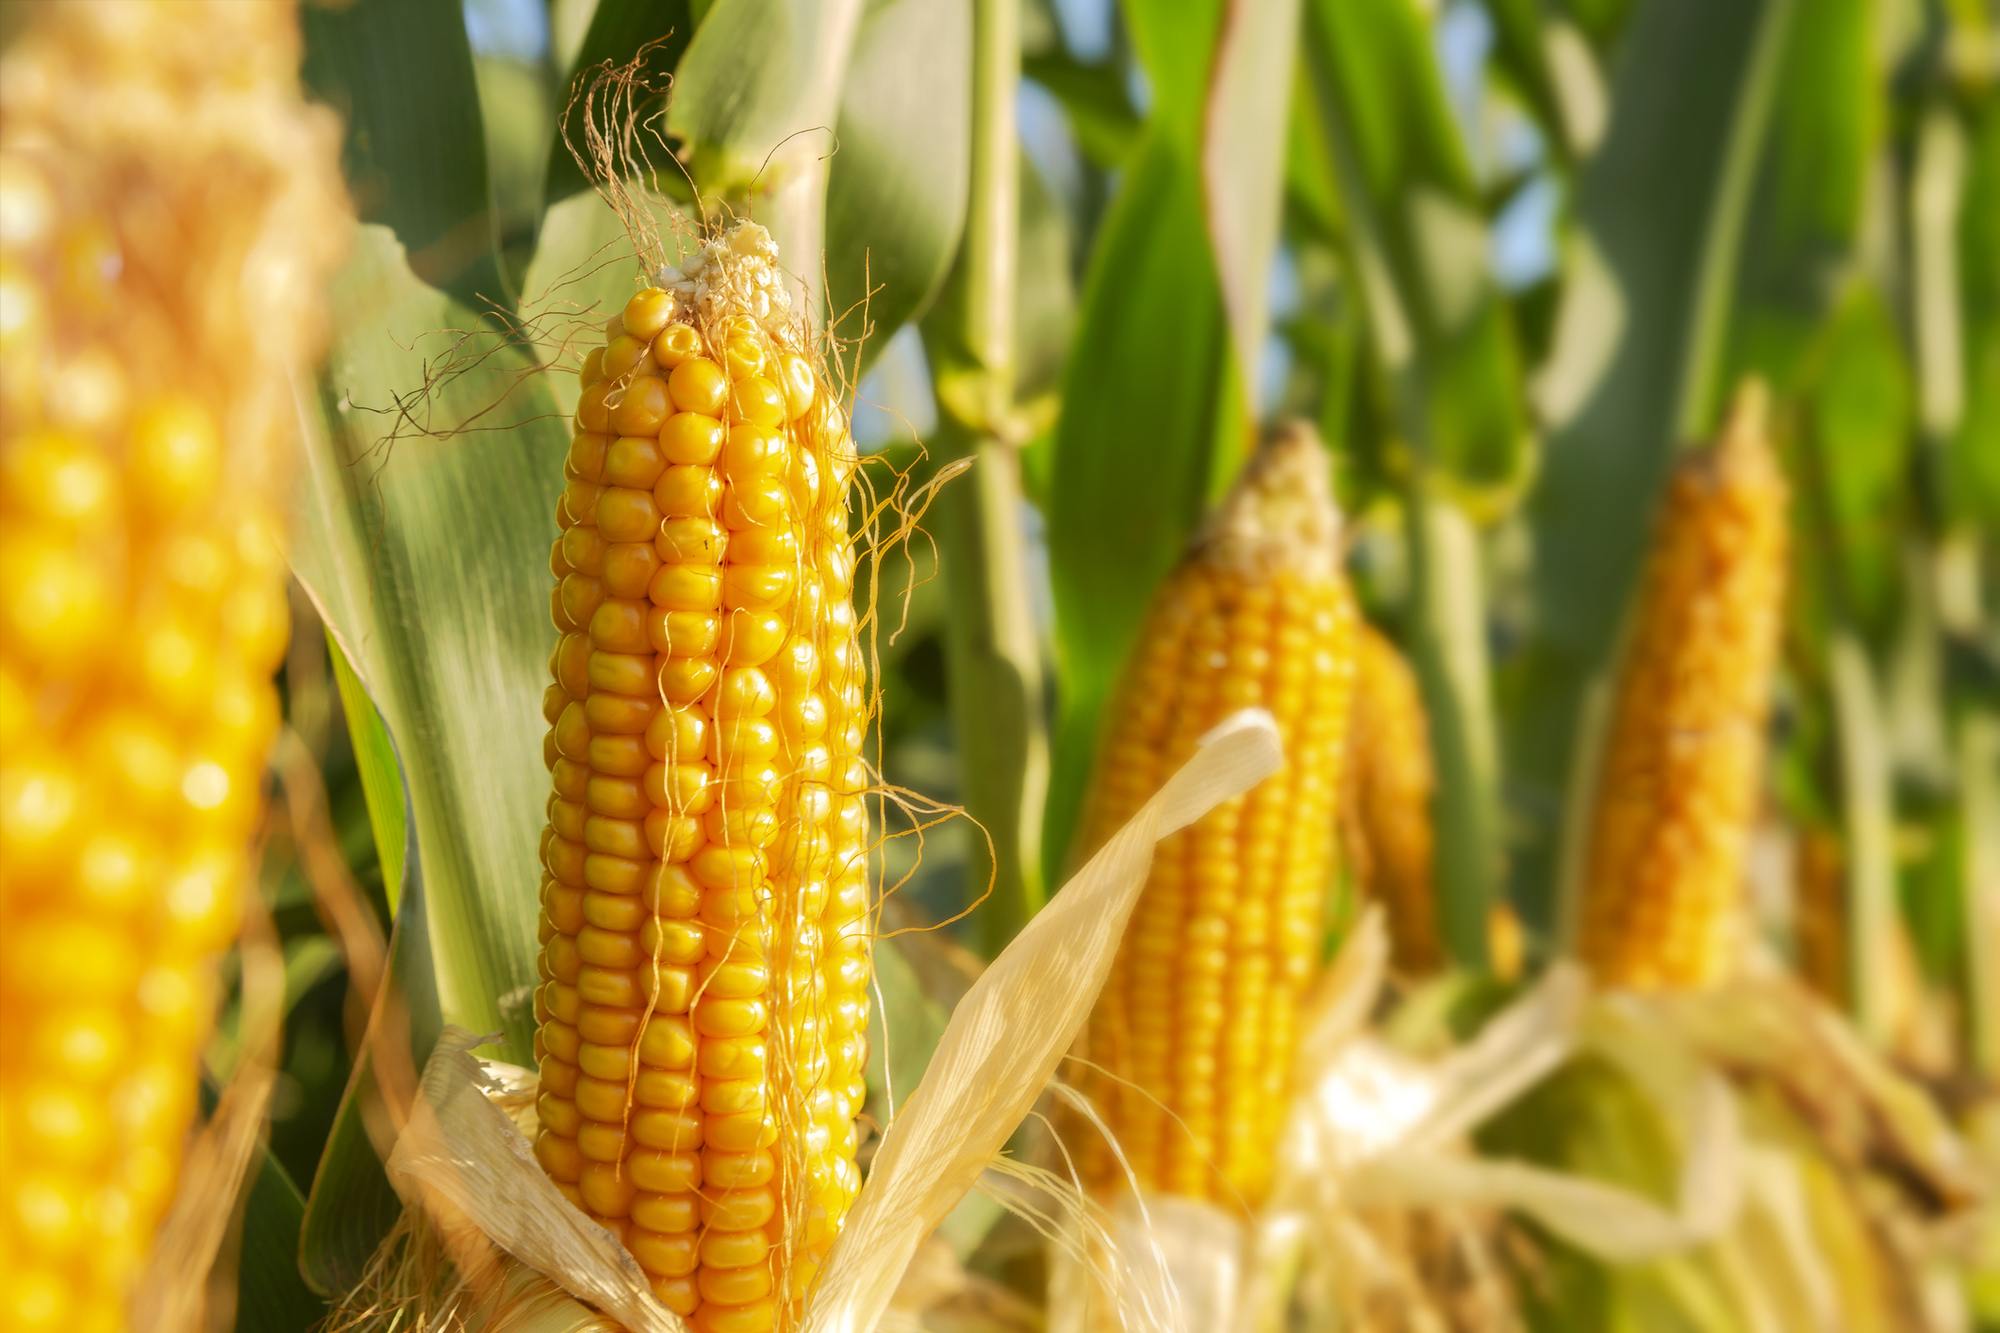 Corn ears in the field